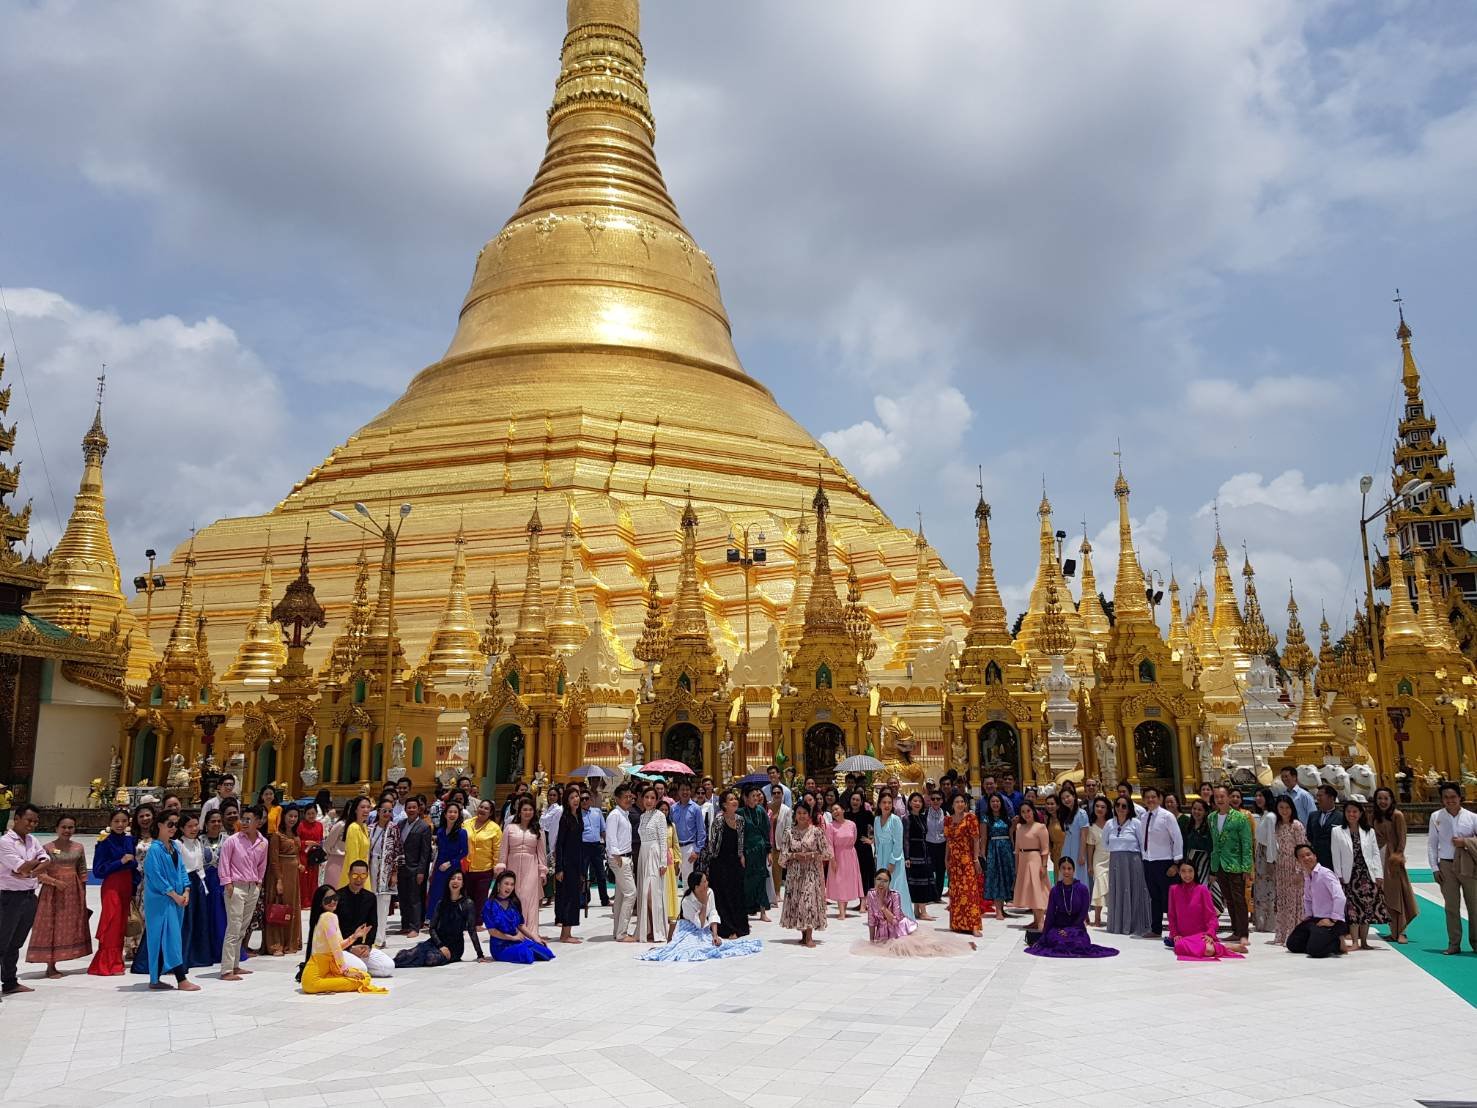 ทริปไหว้พระพม่า Myanmar Trip คณะ BIG CEO